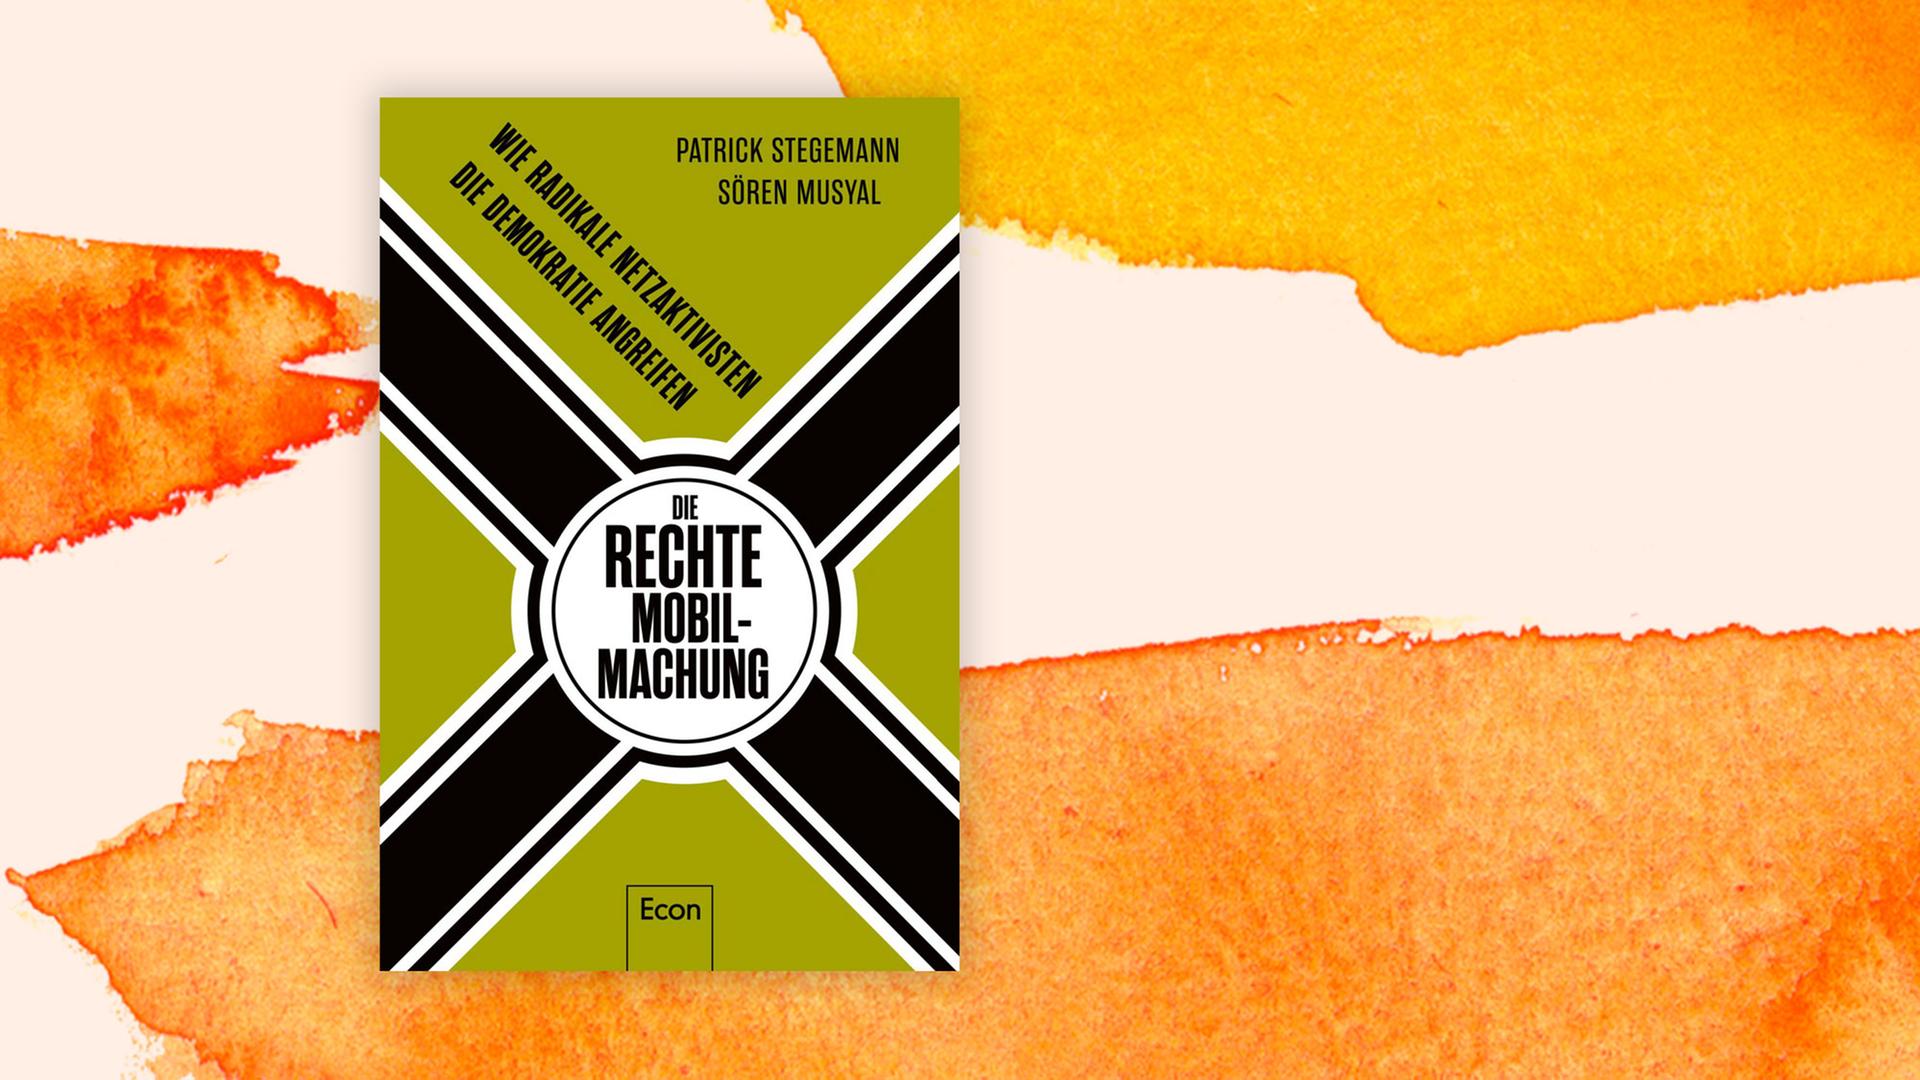 Das Bild zeigt das Cover des Buches von Patrick Stegemann und Sören Musyal. Es heißt: "Die rechte Mobilmachung. Wie radikale Netzaktivisten die Demokratie angreifen"